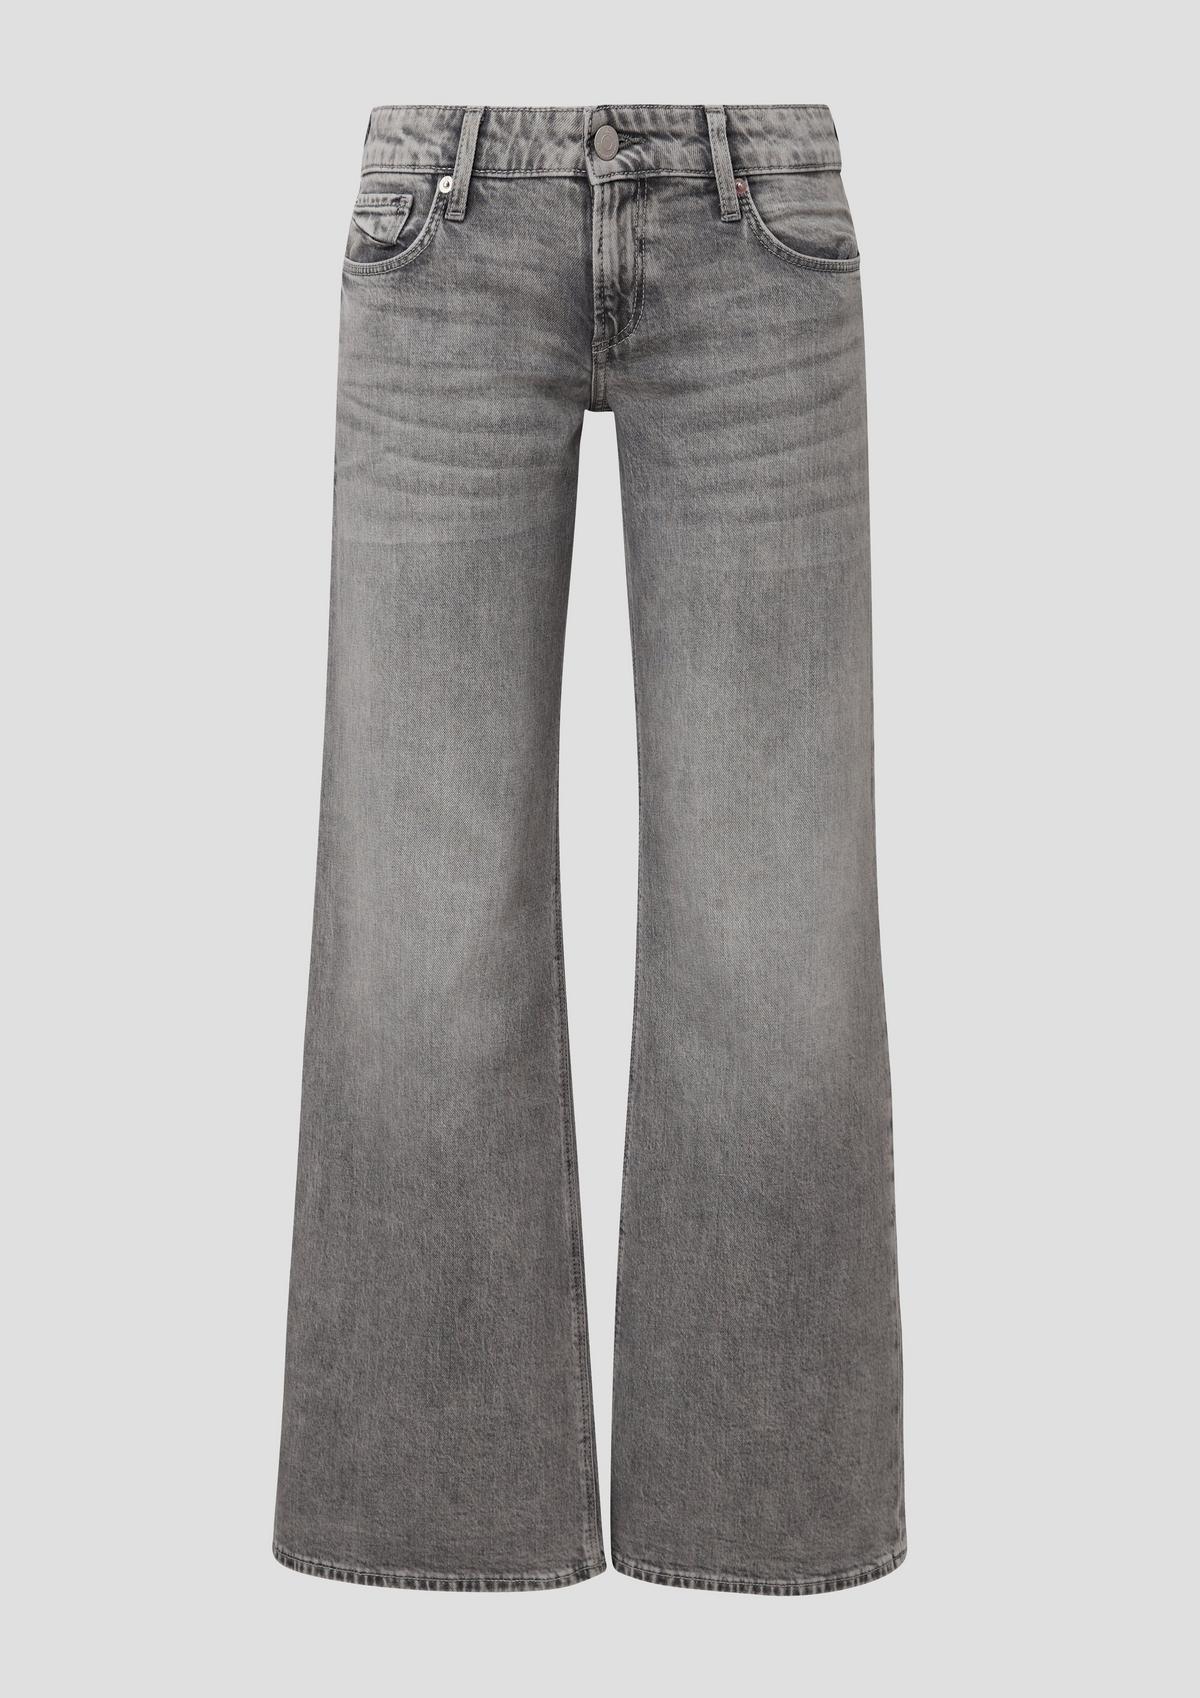 s.Oliver Catie jeans / slim fit / low rise / wide leg / cotton blend